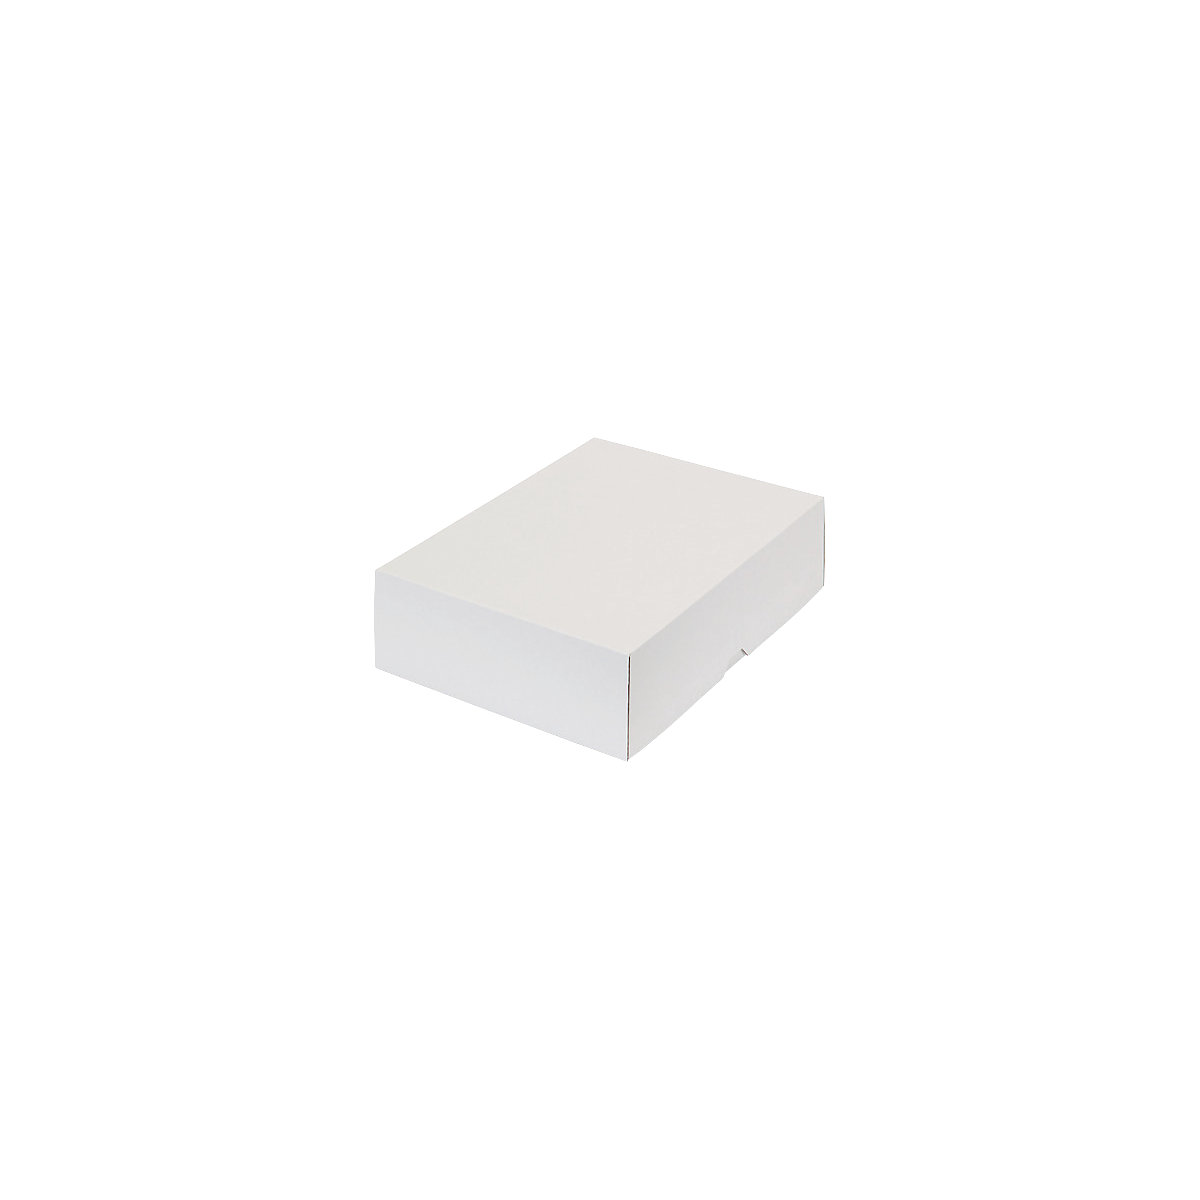 Stülpdeckelkarton, zweiteilig, Innenmaße 302 x 213 x 80 mm, A4, weiß, ab 100 Stk-41